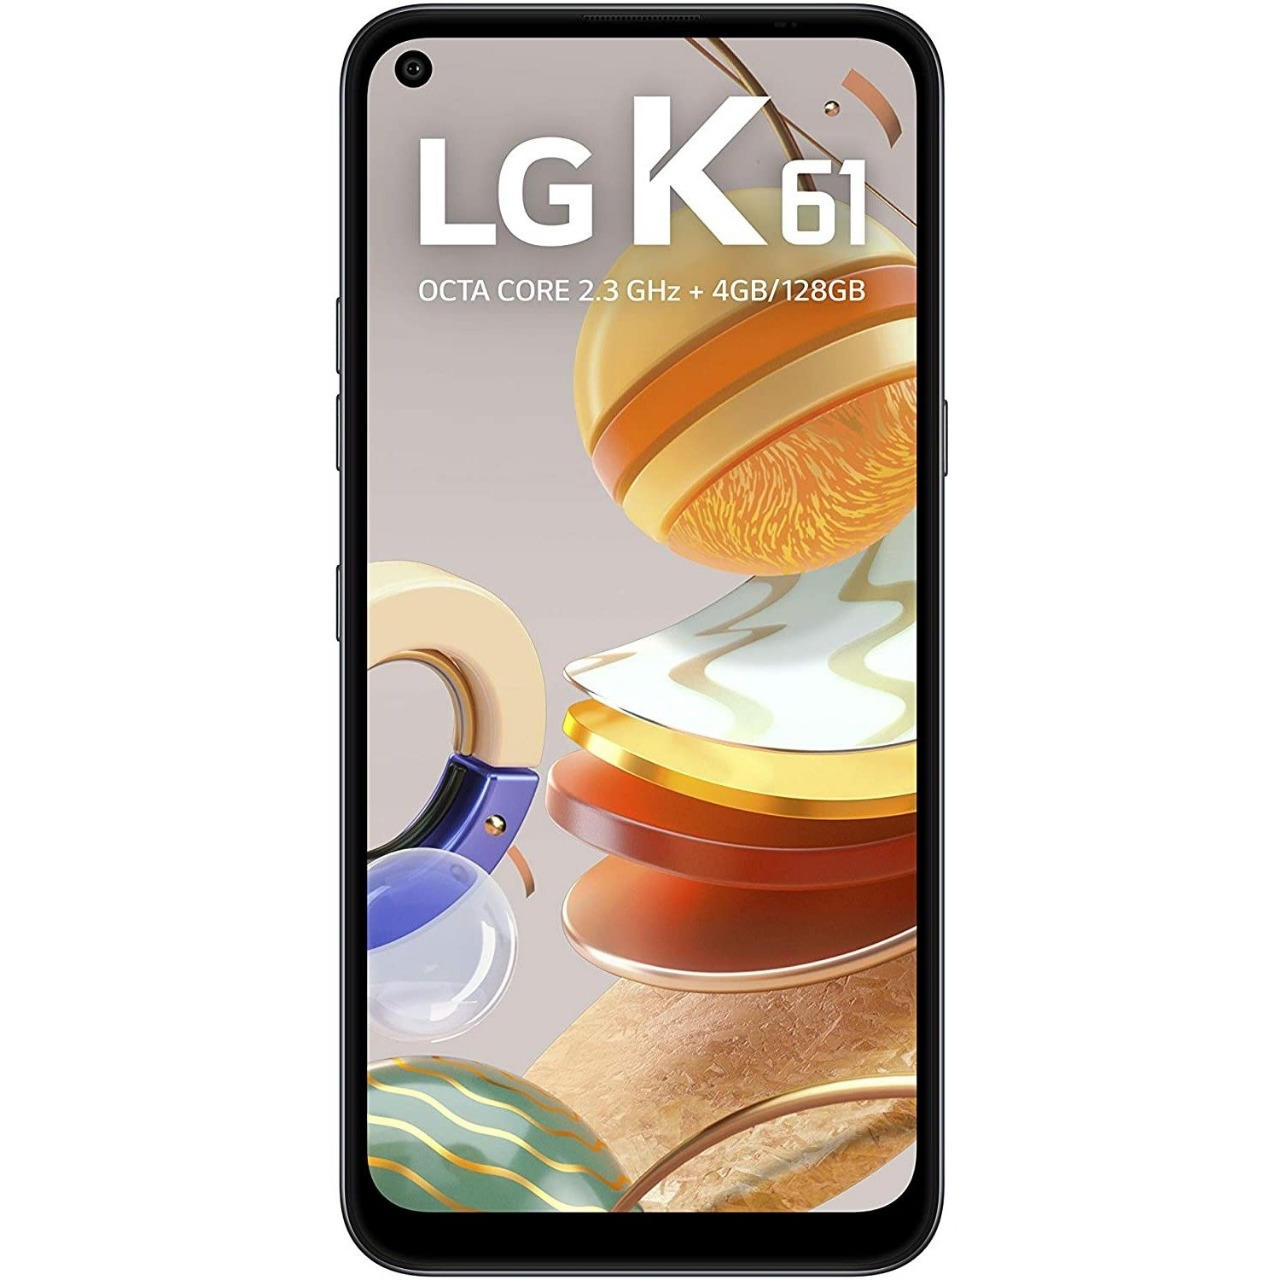 Smartphone LG K61 ,128GB, RAM de 4GB, Tela de 6,55″ HD+ 19.5:9, Inteligência Artificial,Câmera Quádrupla e Processador Octa-Core 2.3, Titanium